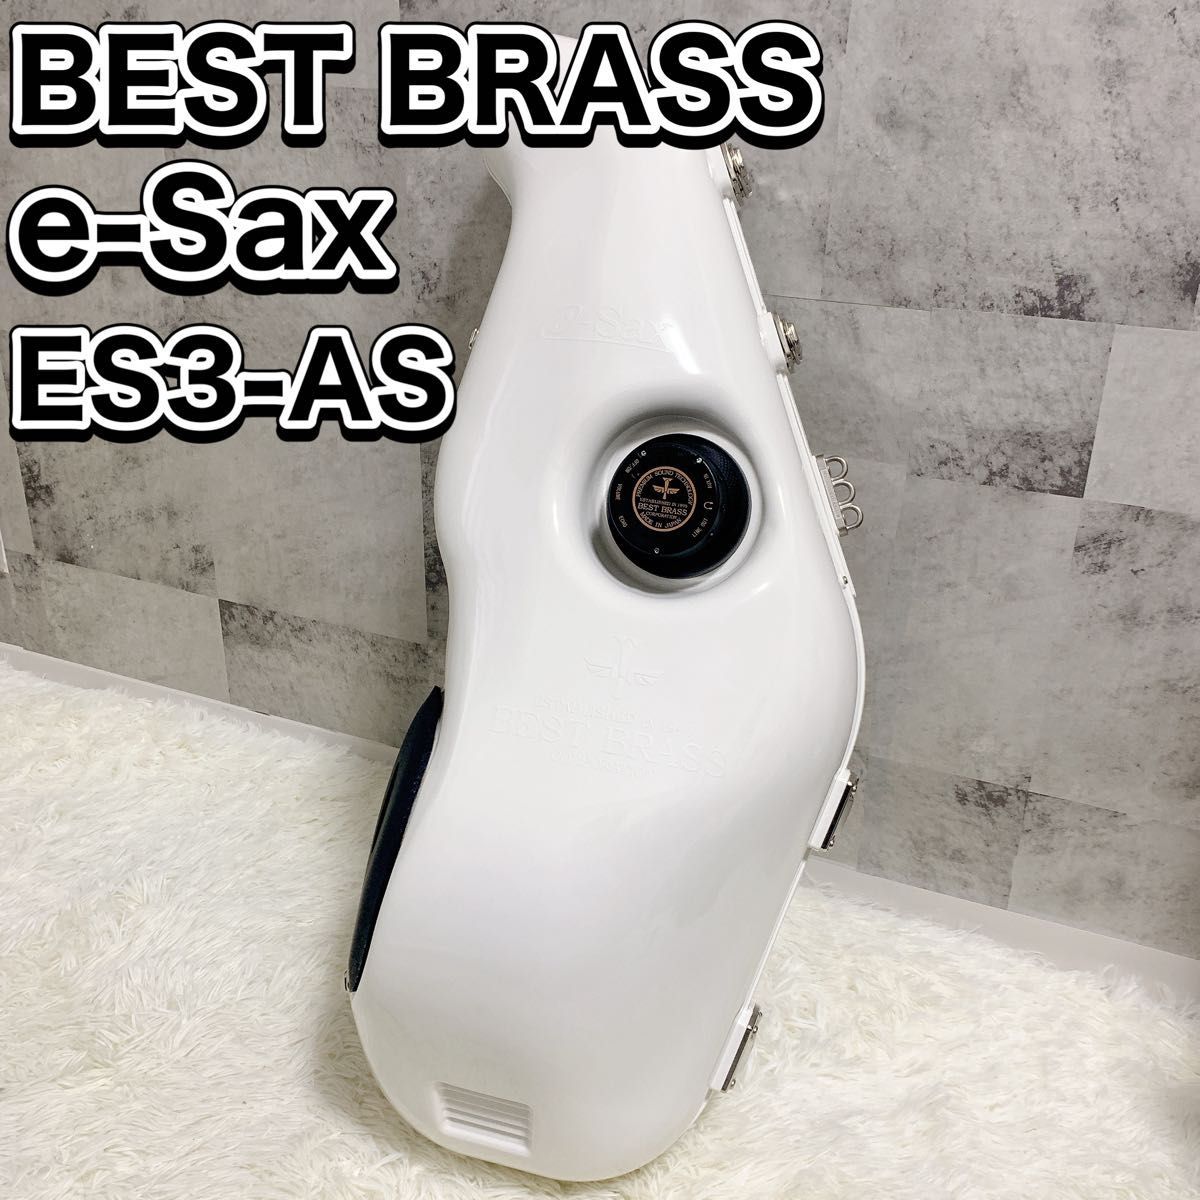 ベストブラス イーサックス アルトサックス用消音器 ES3-AS BEST BRASS e-Sax 消音機_画像1